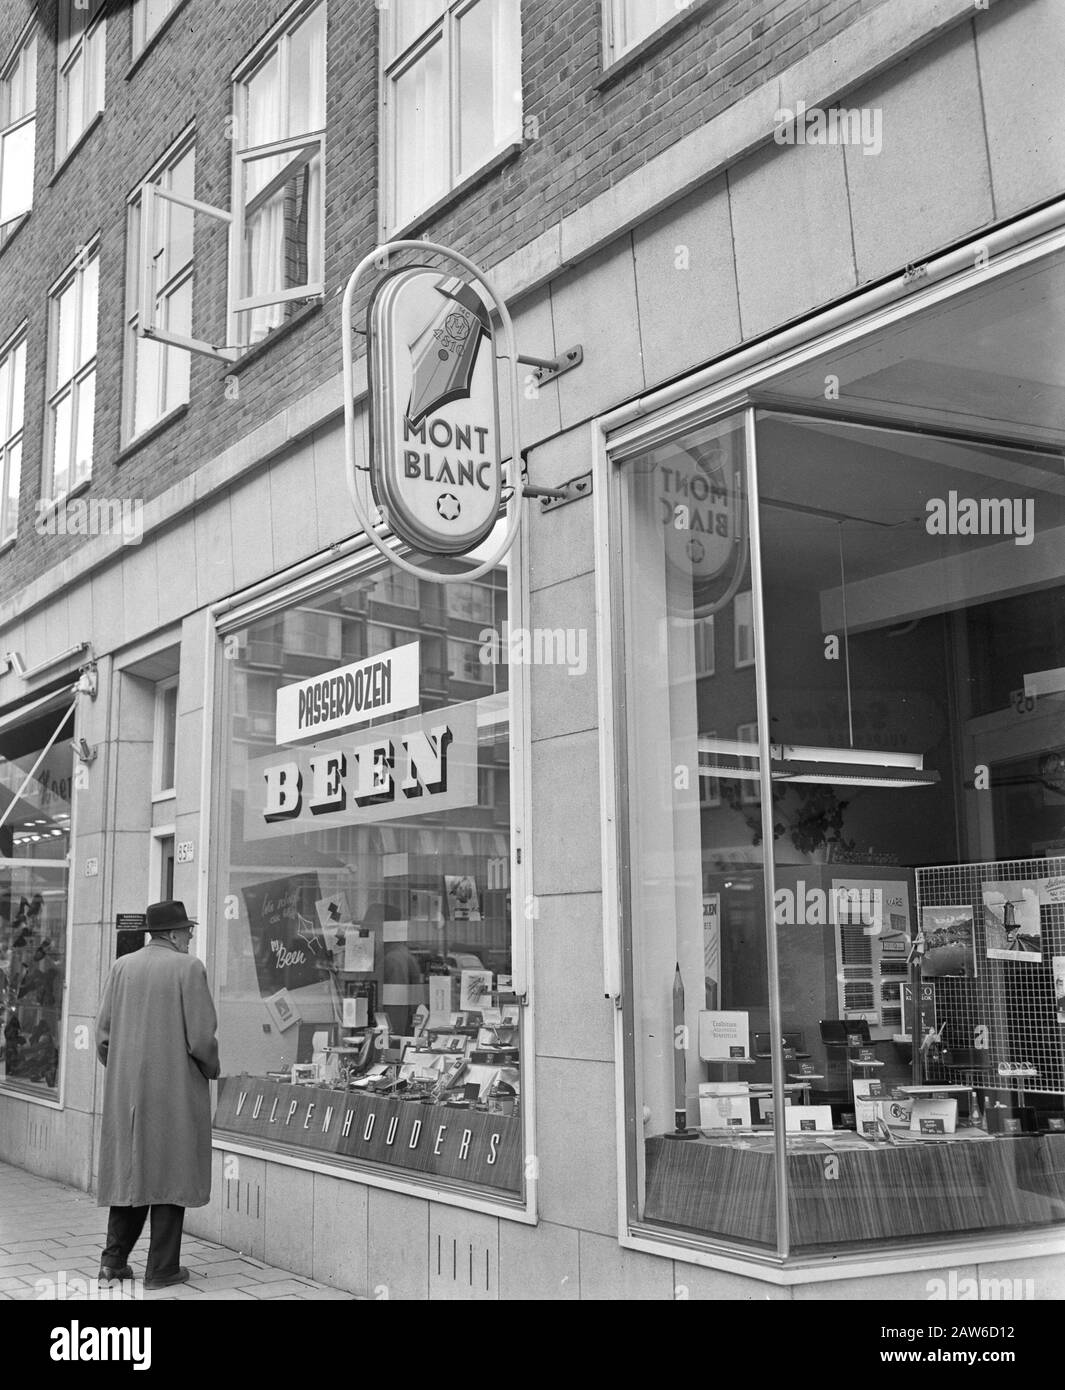 Mission Blazer & Metz-Montblanc Werbung Amsterdam Datum: 24. April 1956 Standort: Amsterdam, Noord-Holland Schlagwörter: Werbung, Aufträge Stockfoto